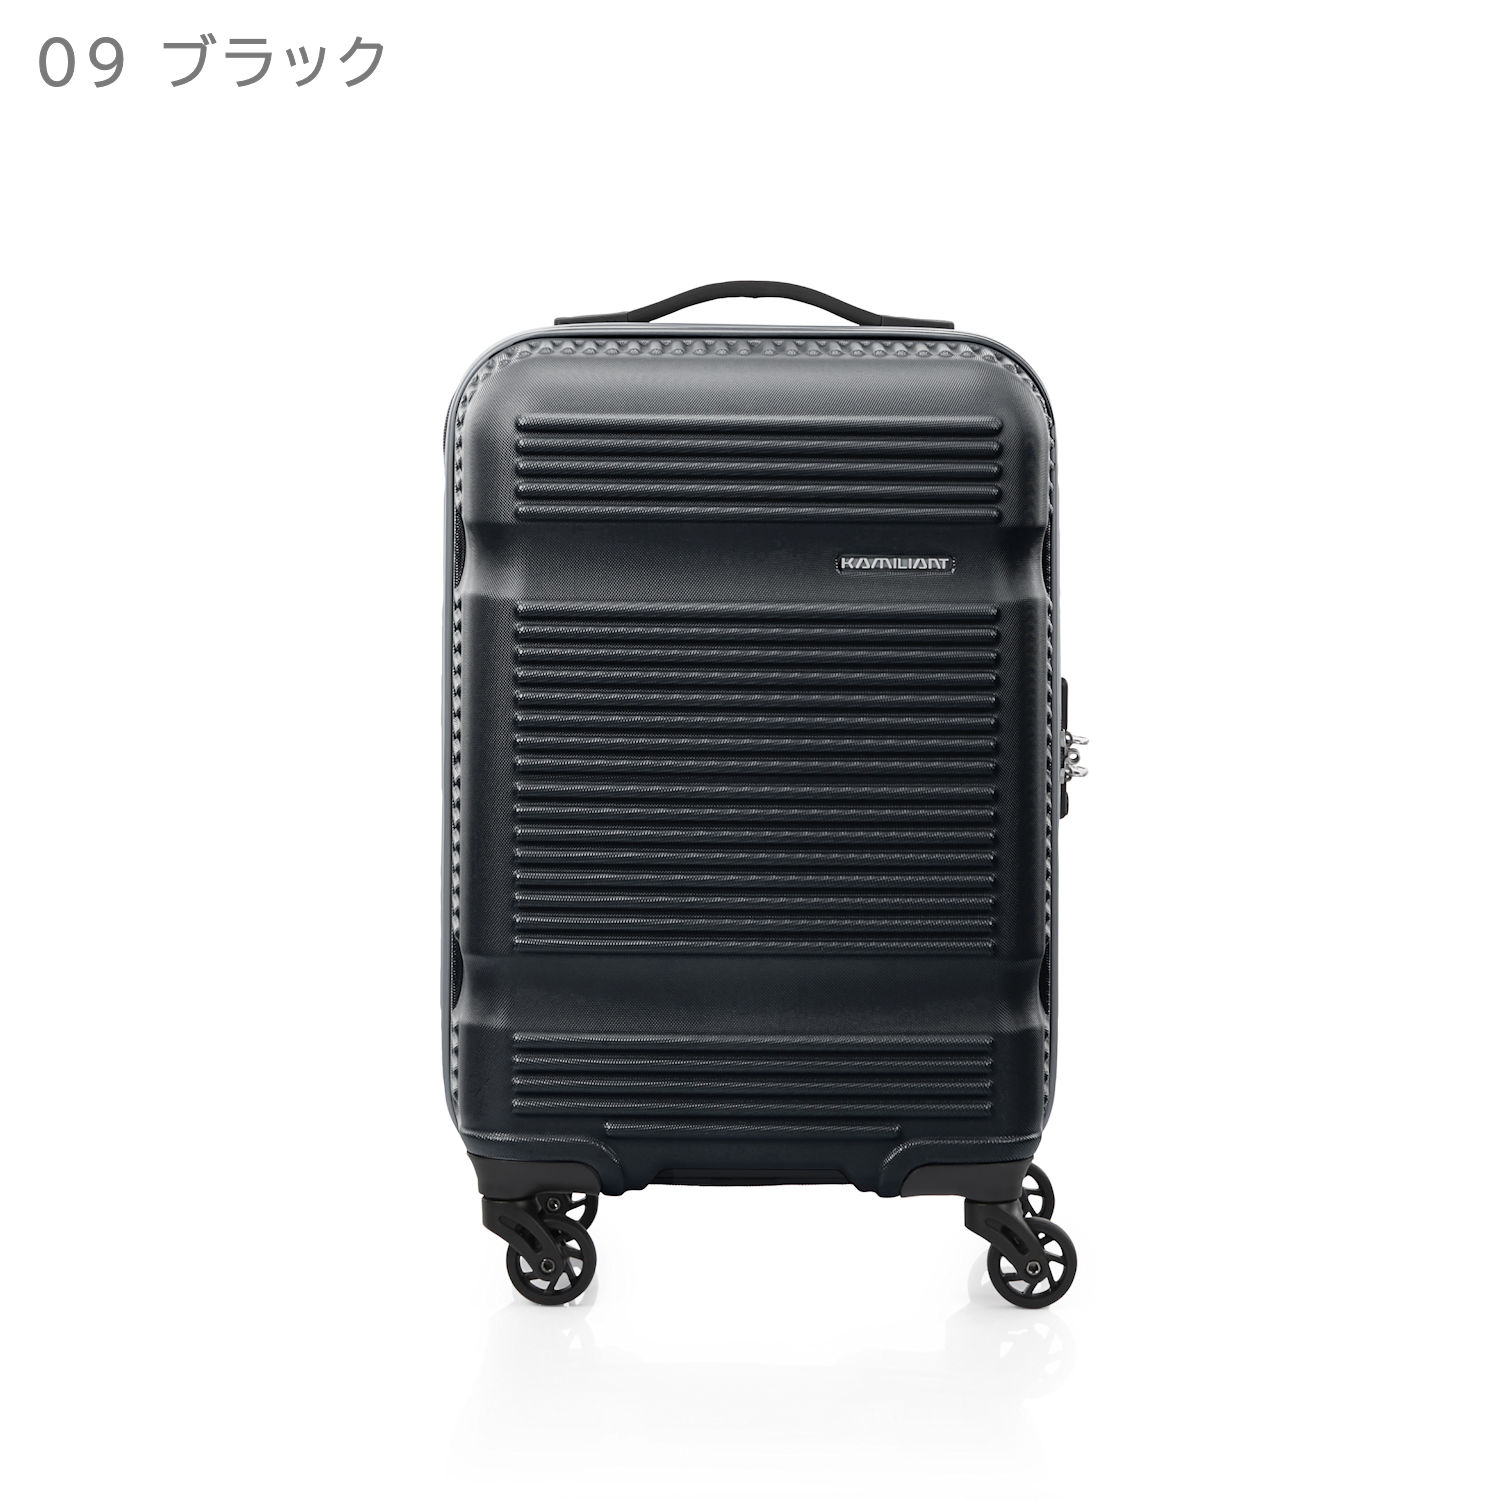 スーツケース カメレオン by サムソナイト - 生活雑貨